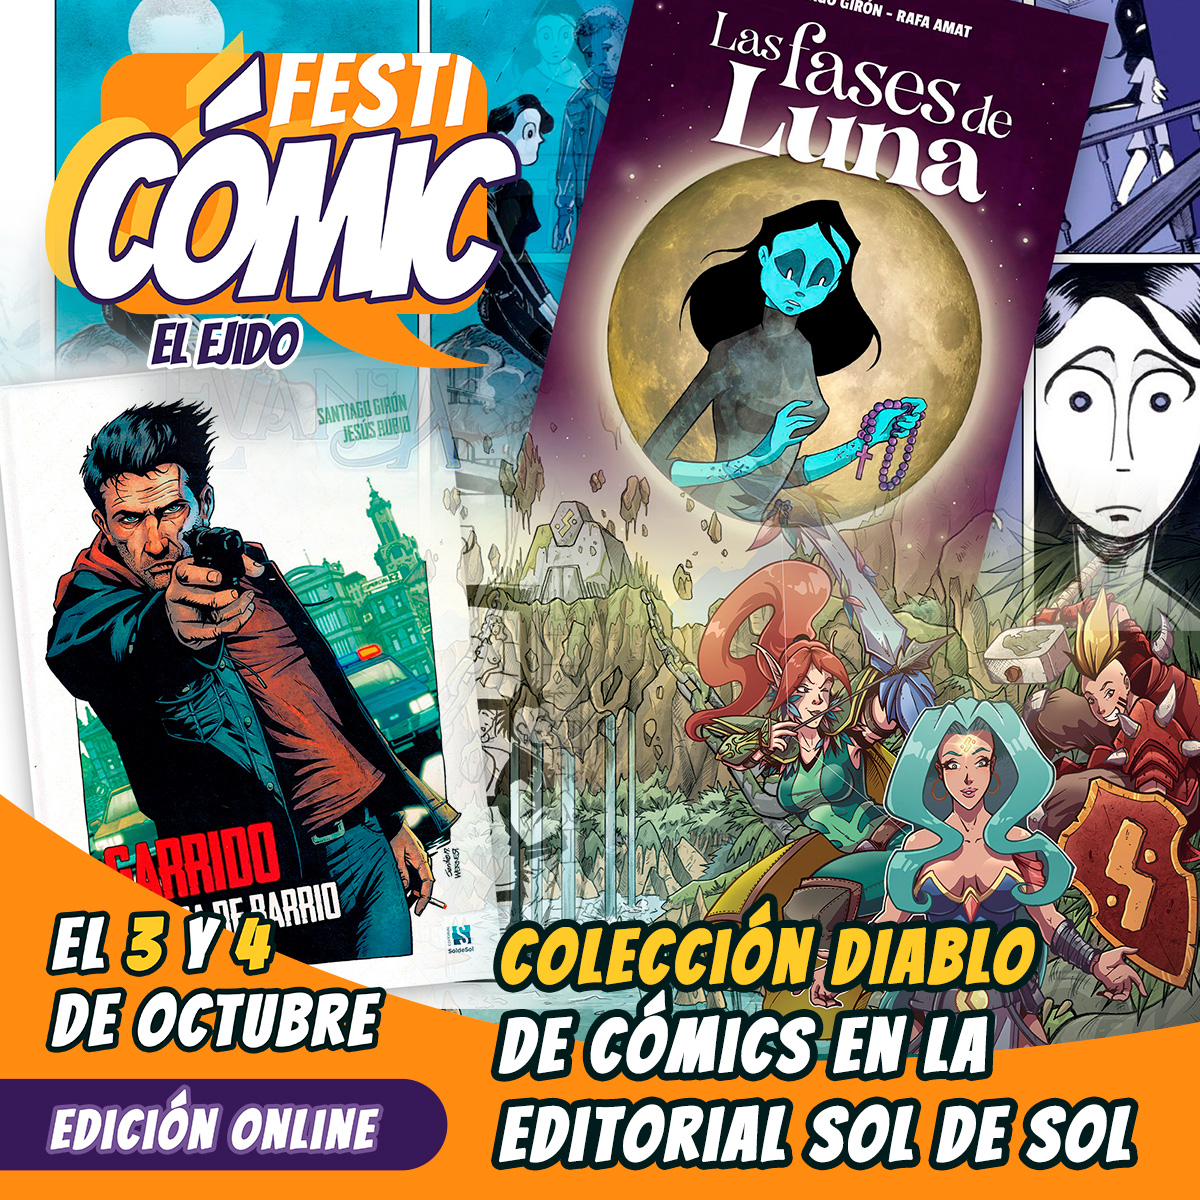 Colección DIABLO de cómics en la editorial Sol de Sol - Festicómic 2020